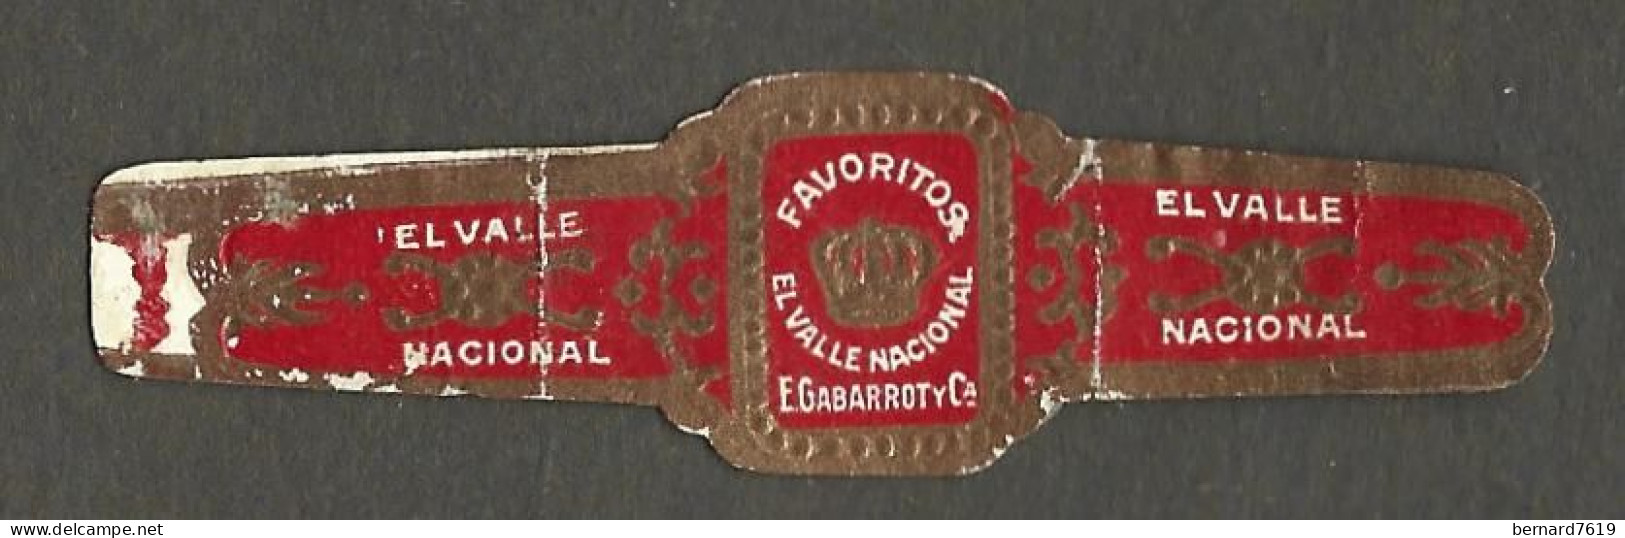 Bague De Cigare   Ancienne  1870 - 1920 - Elvalles  Nacional - Favoritos  E Gabarrot - Bagues De Cigares